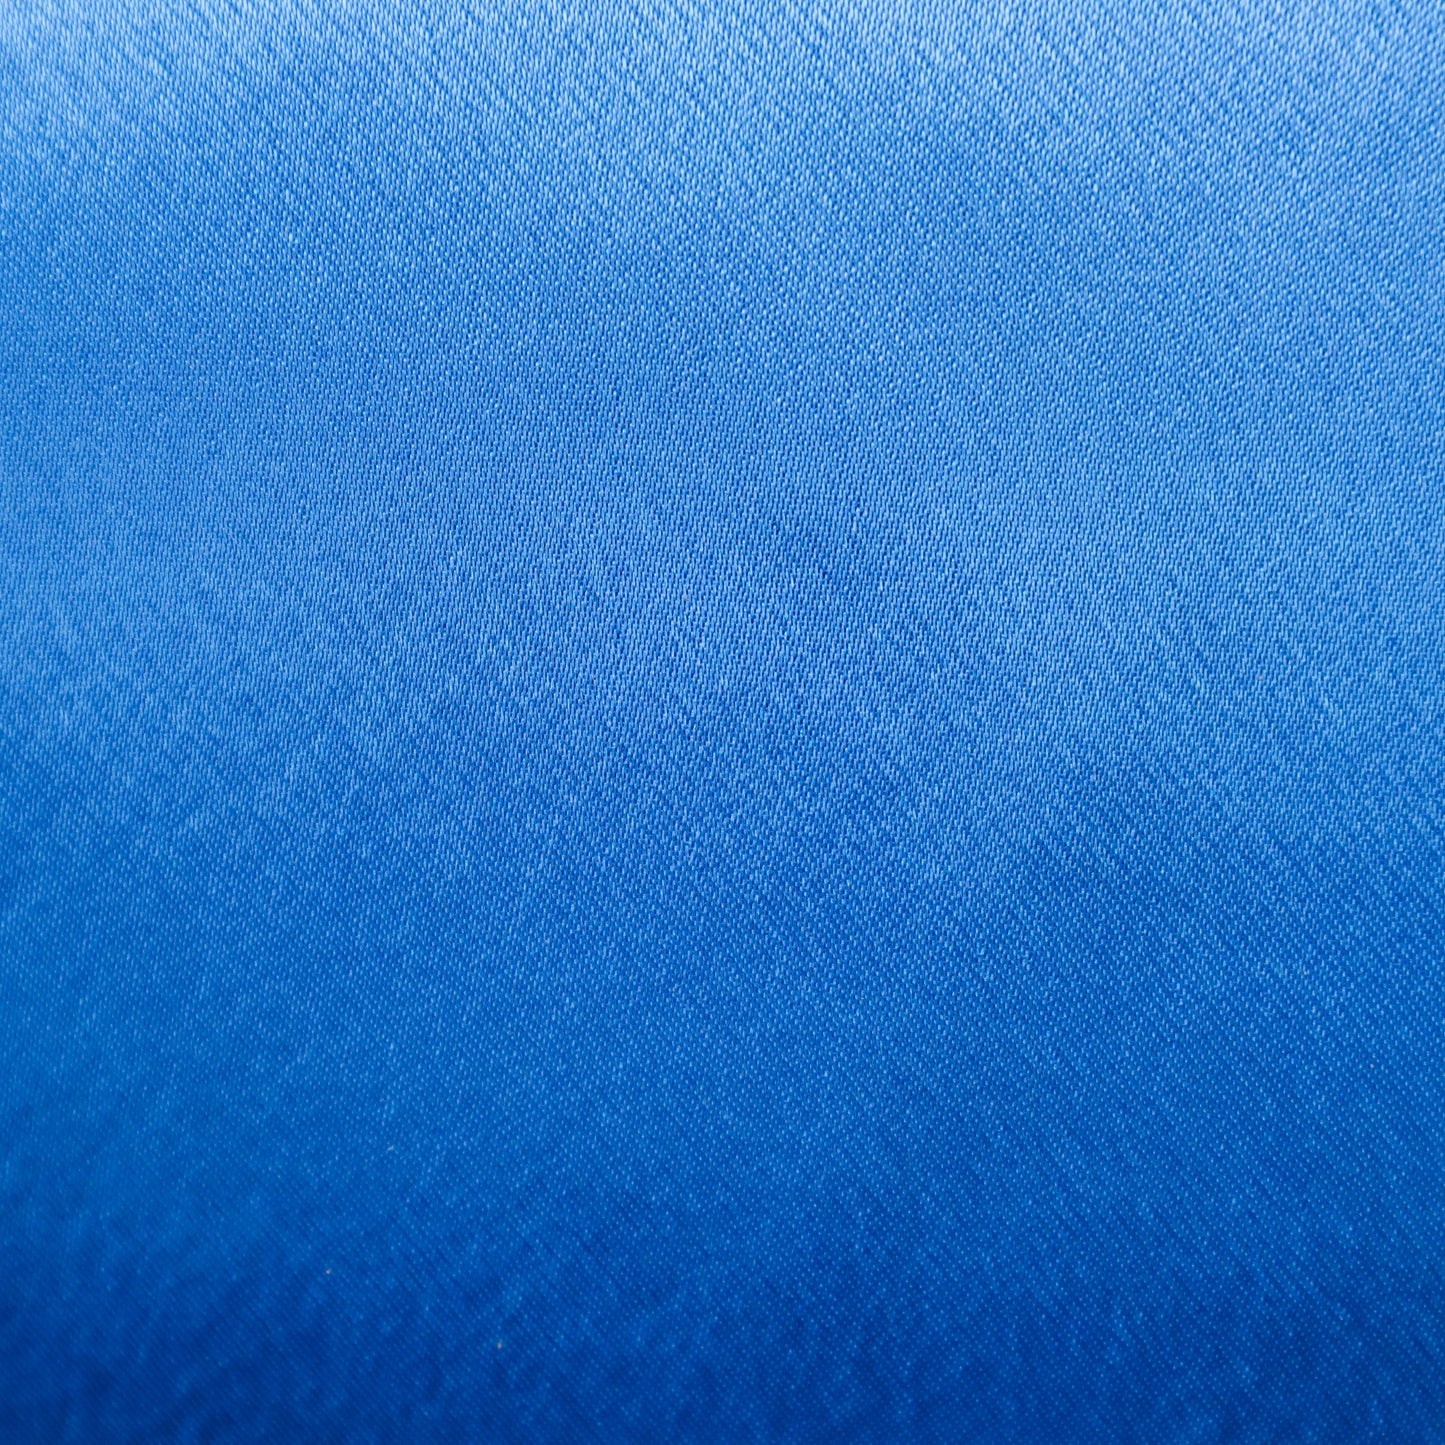 Lightweight Silk Satin in Imperial (Blue)